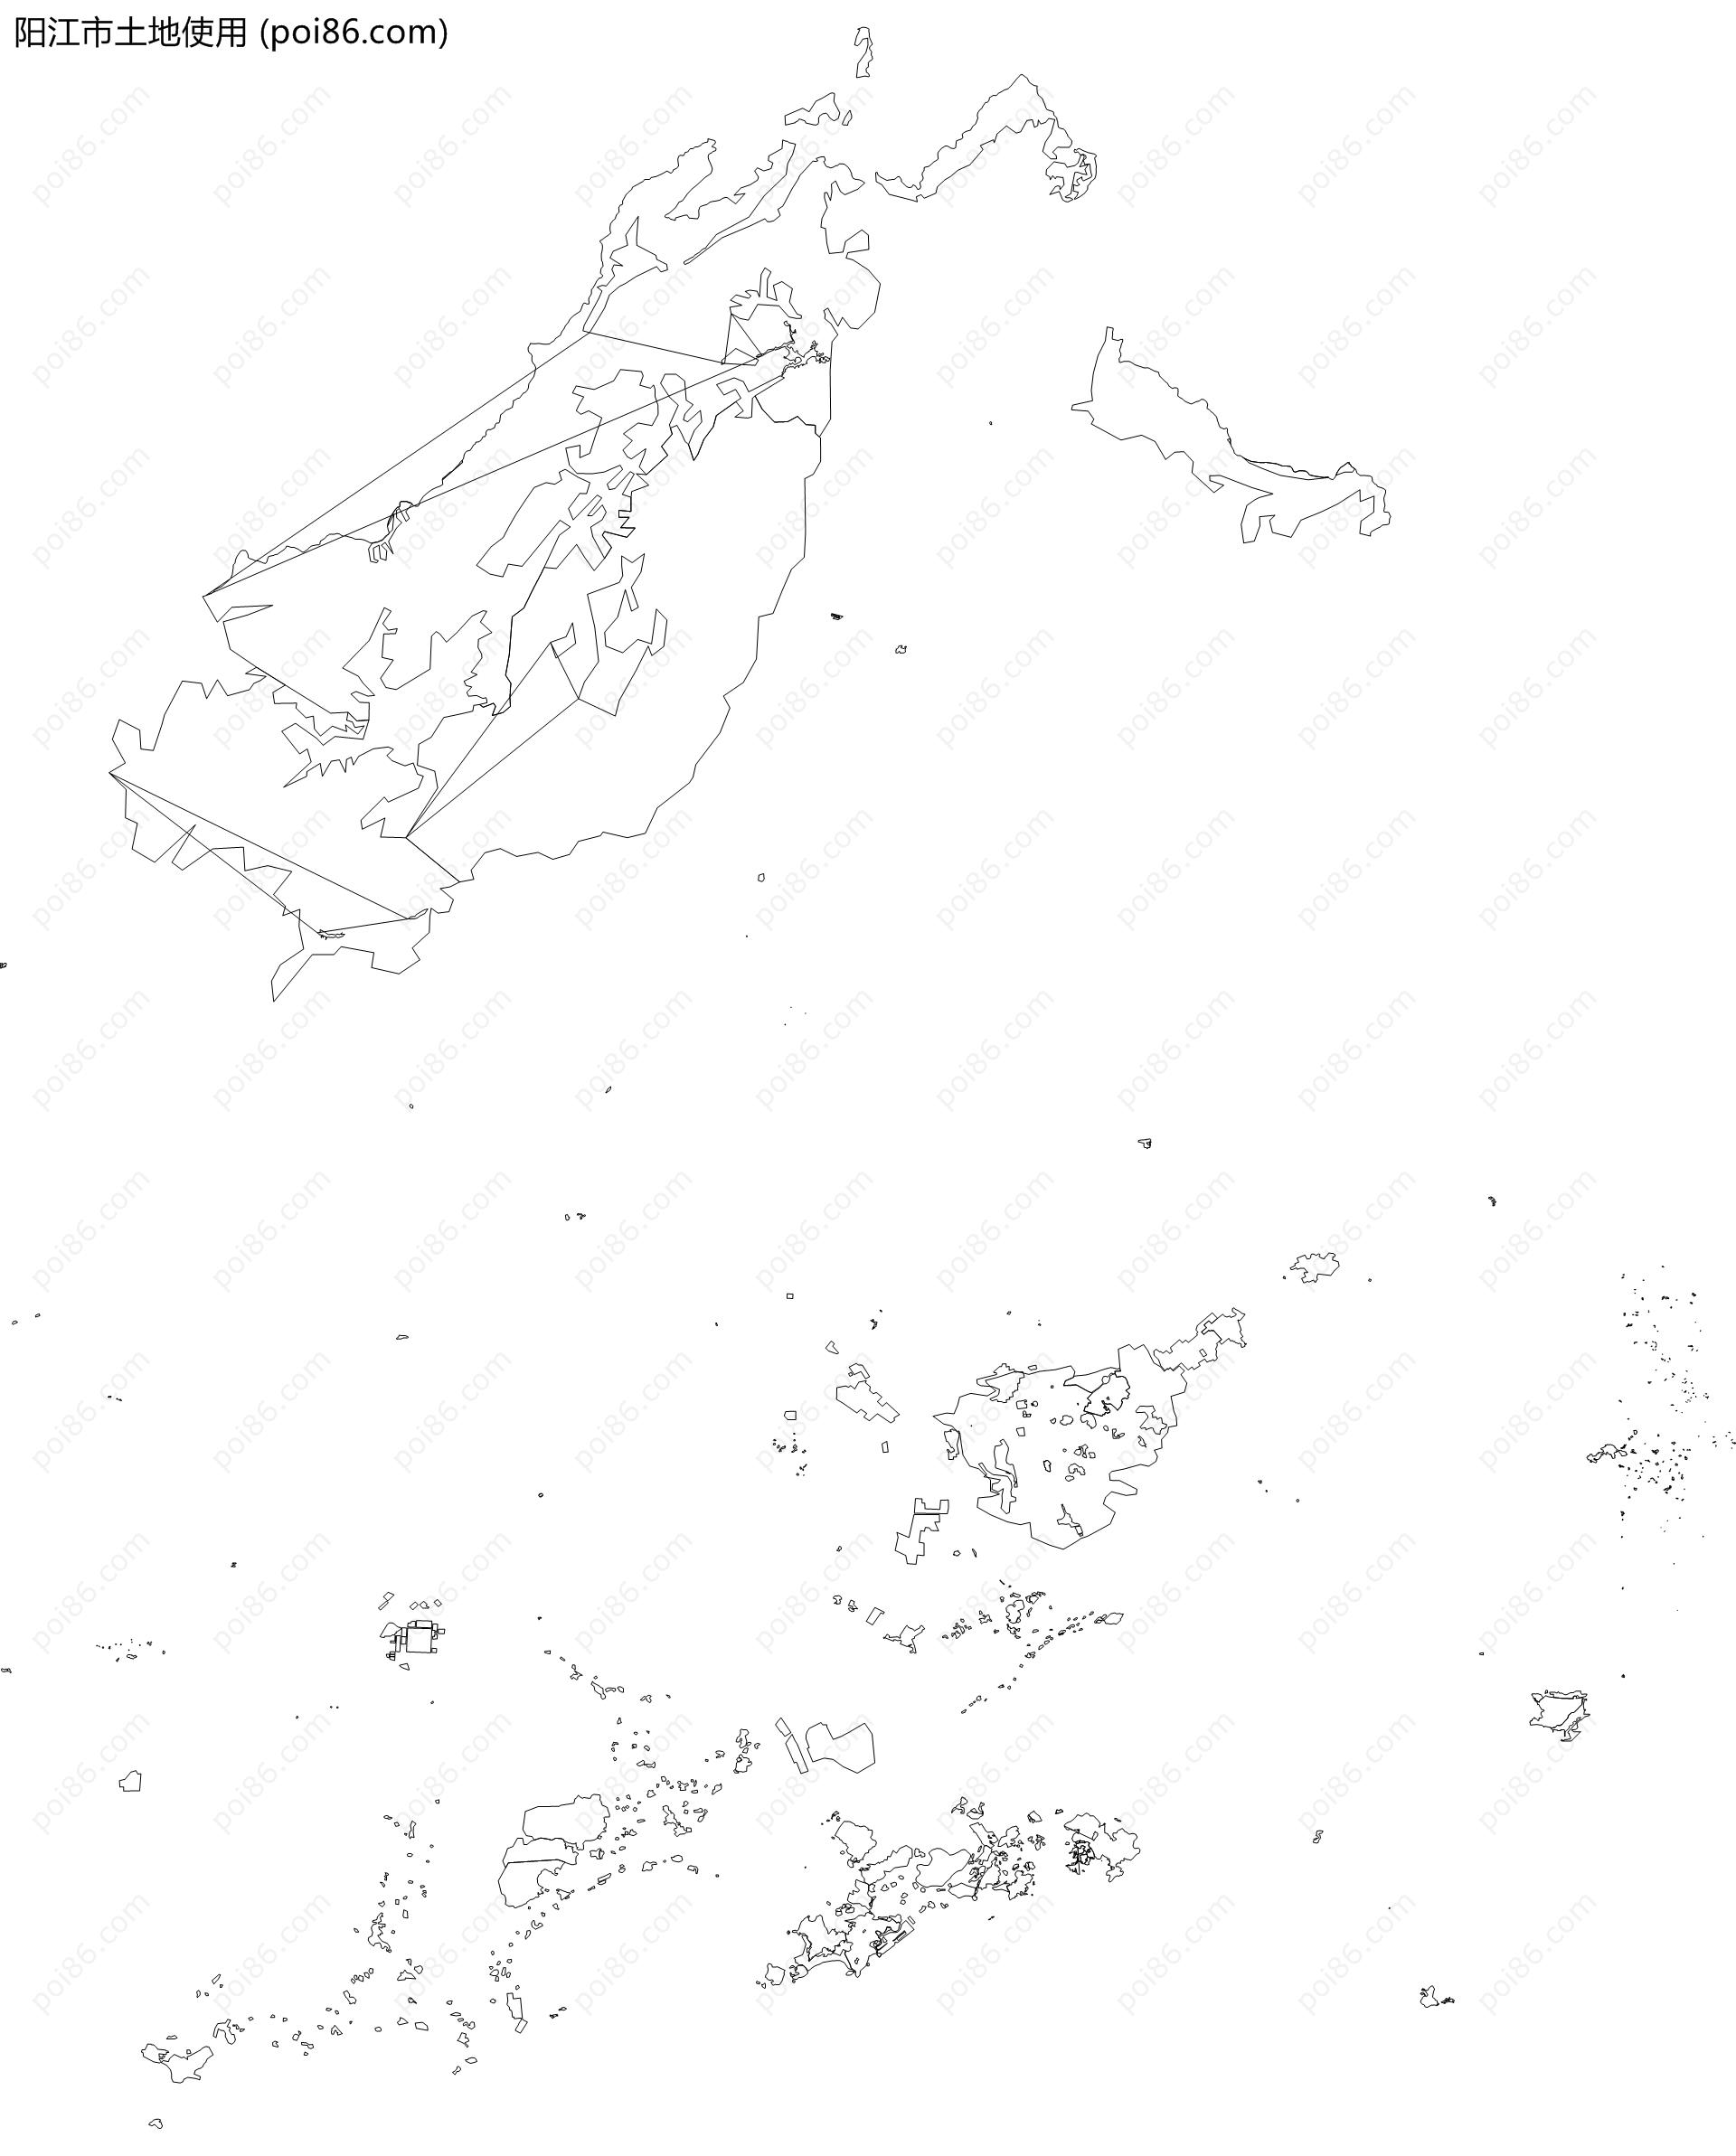 阳江市土地使用地图